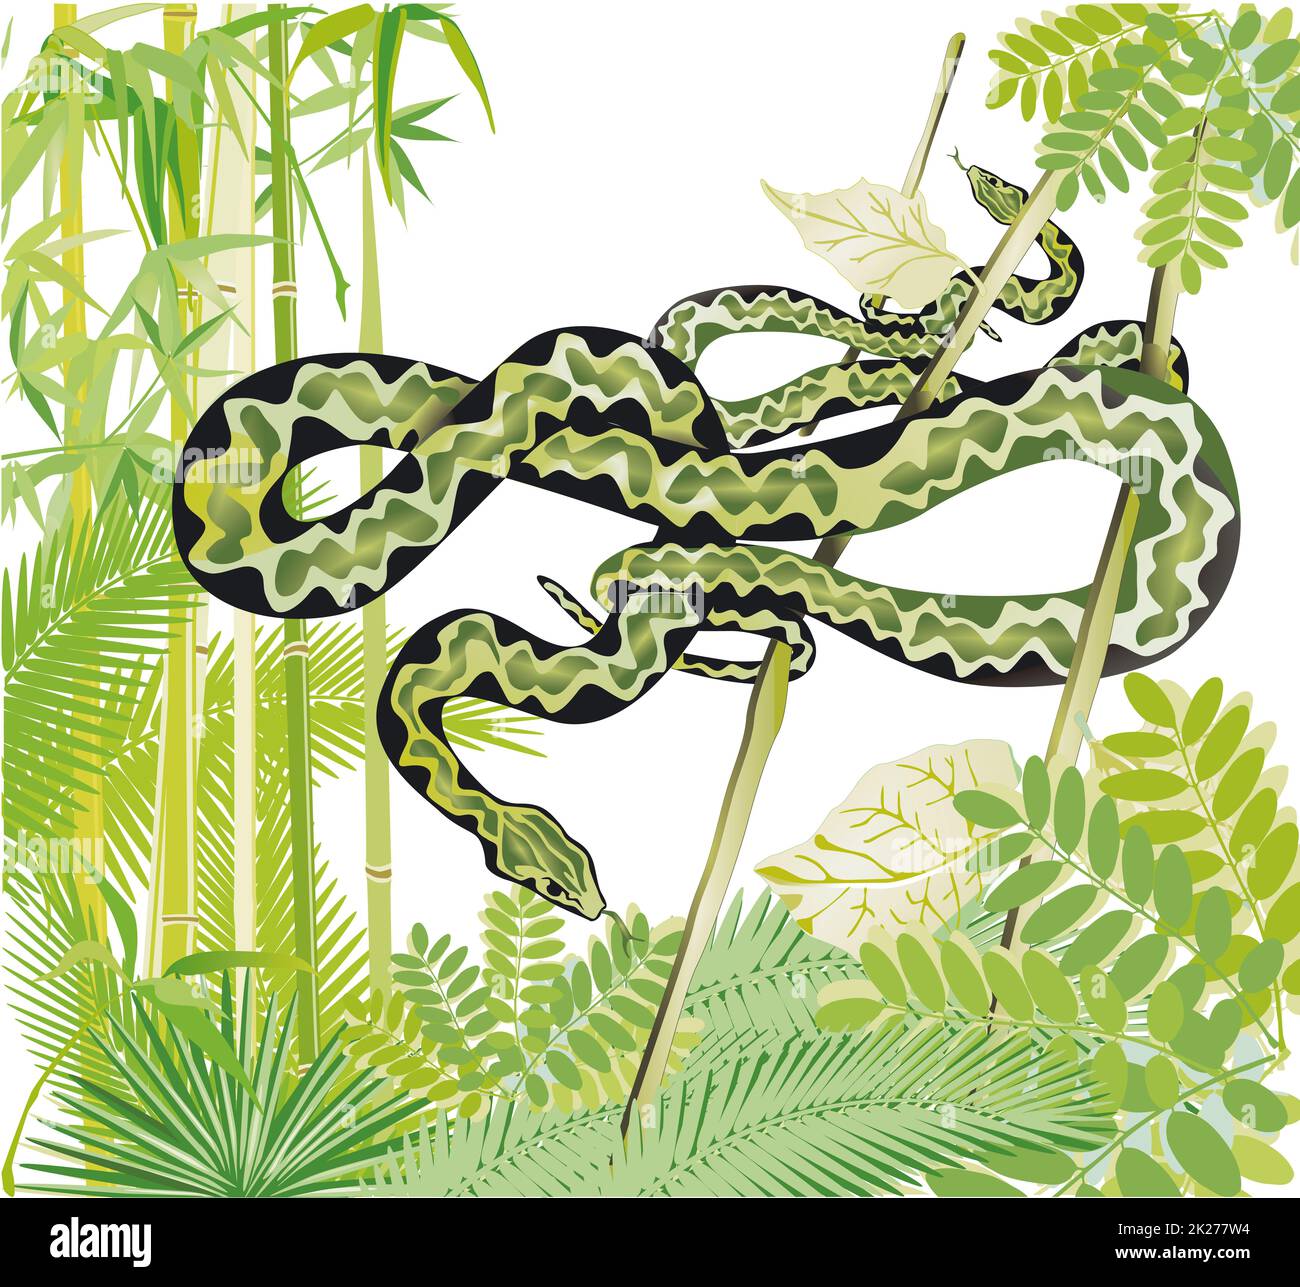 Dos serpientes en la selva, ilustración Foto de stock